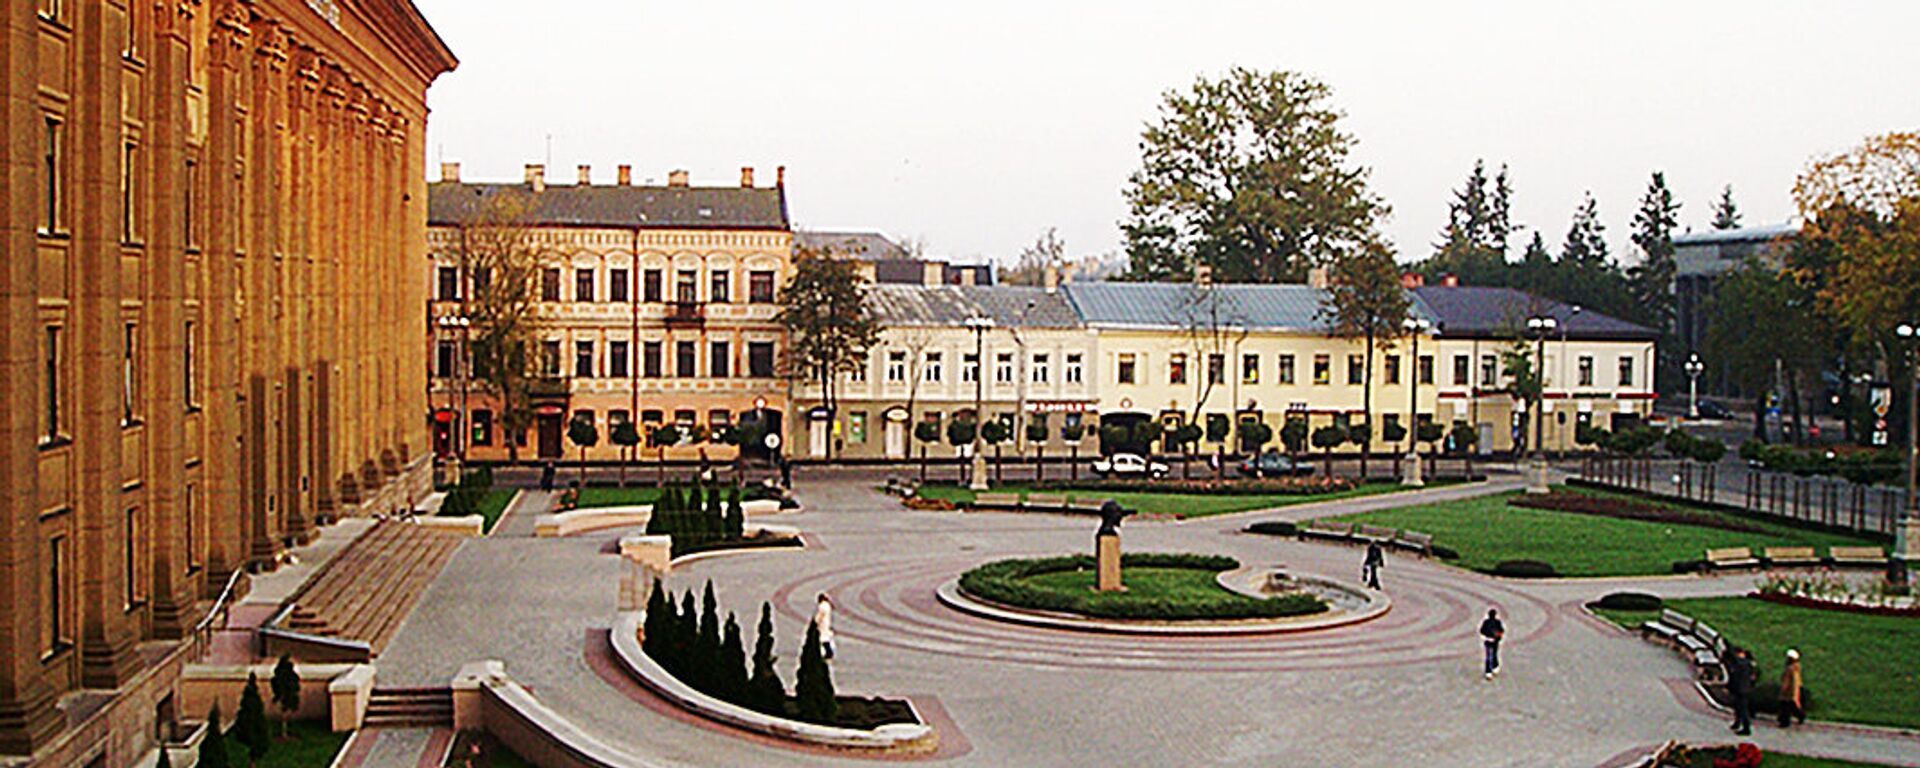 Площадь около старого корпуса Даугавпилсского Университа, архивное фото  - Sputnik Латвия, 1920, 18.03.2021